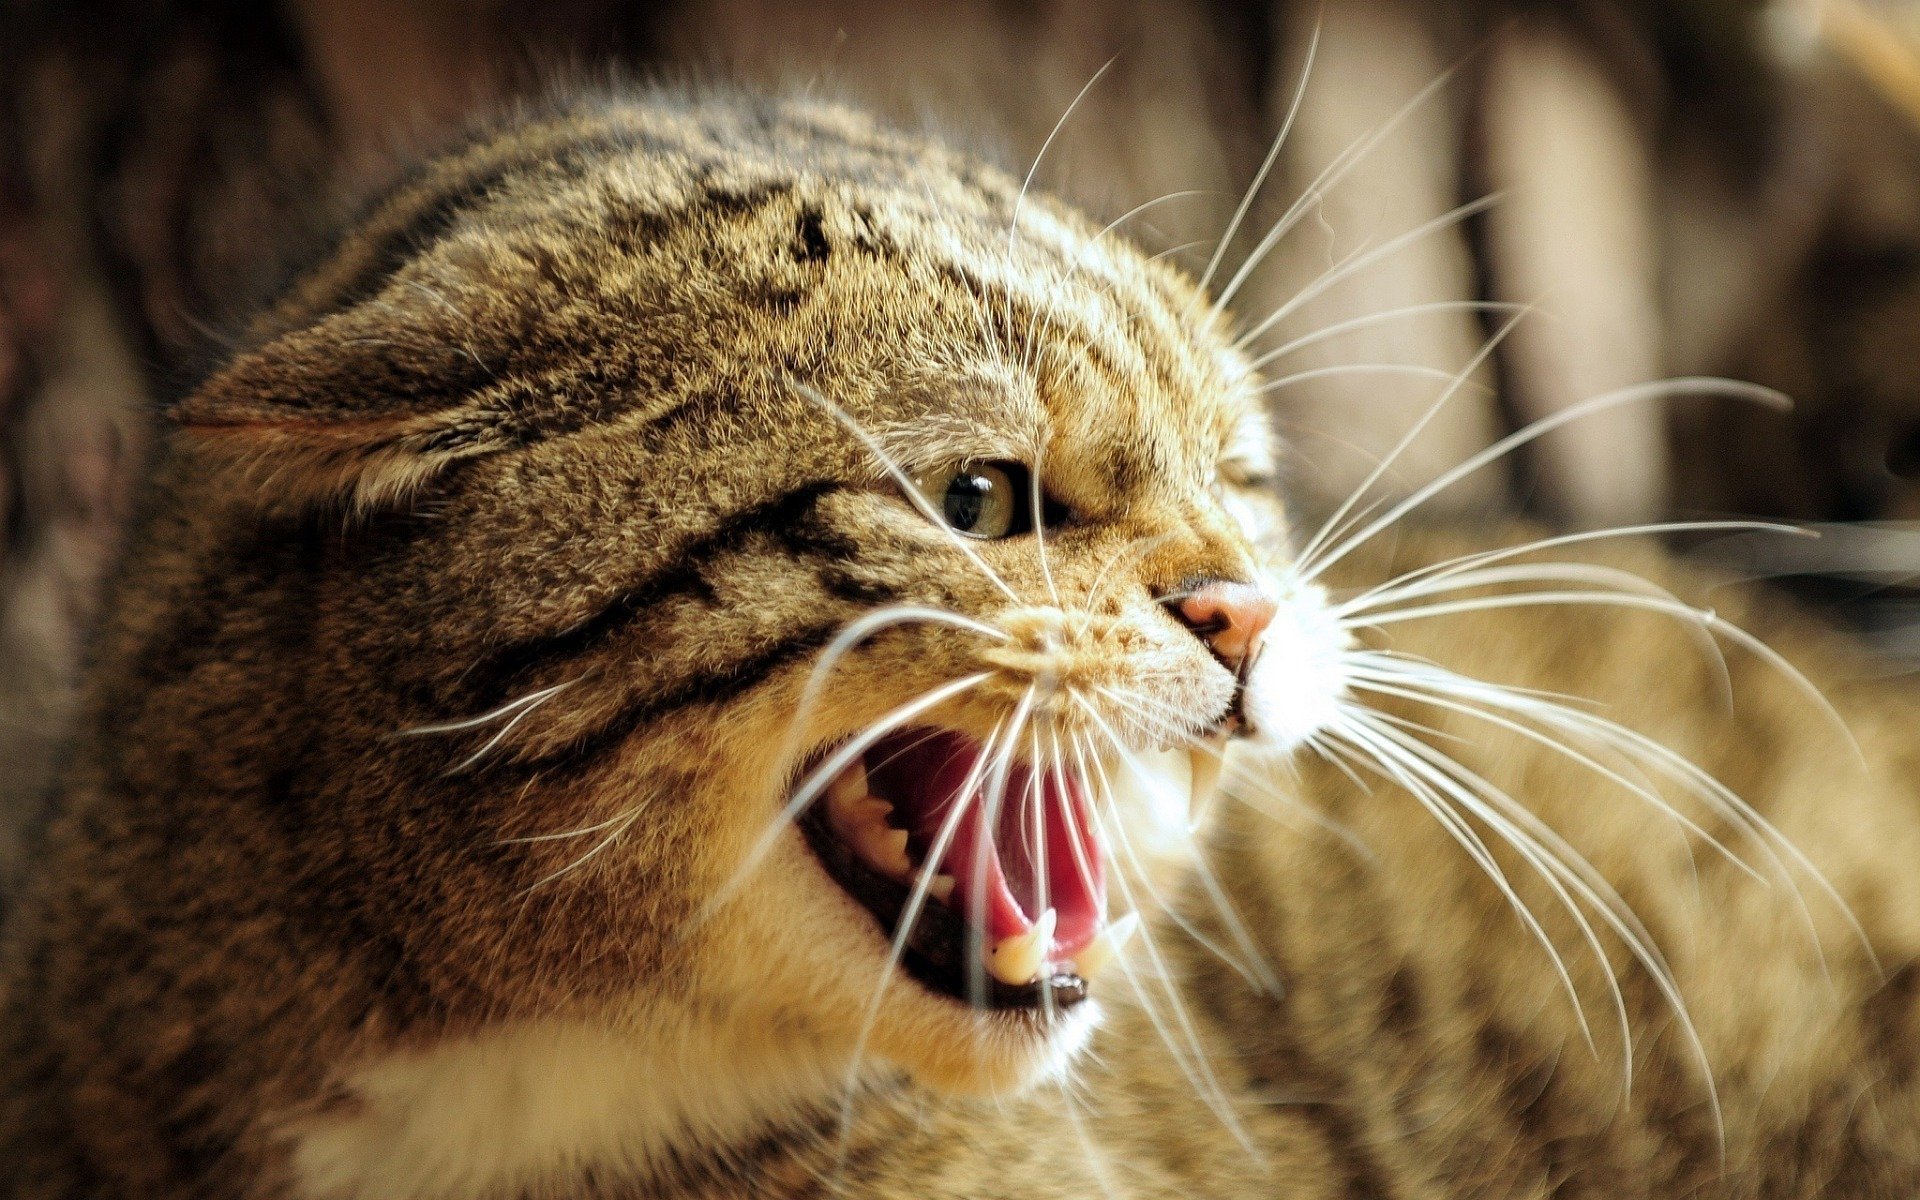 Koty gryzą i atakują w ostateczności. Odpowiednie reagowanie na wysyłane przez koty sygnały uspokajające oraz obserwacja ich mowy ciała pozwoli zapobiec nieprzyjemnym sytuacjom.